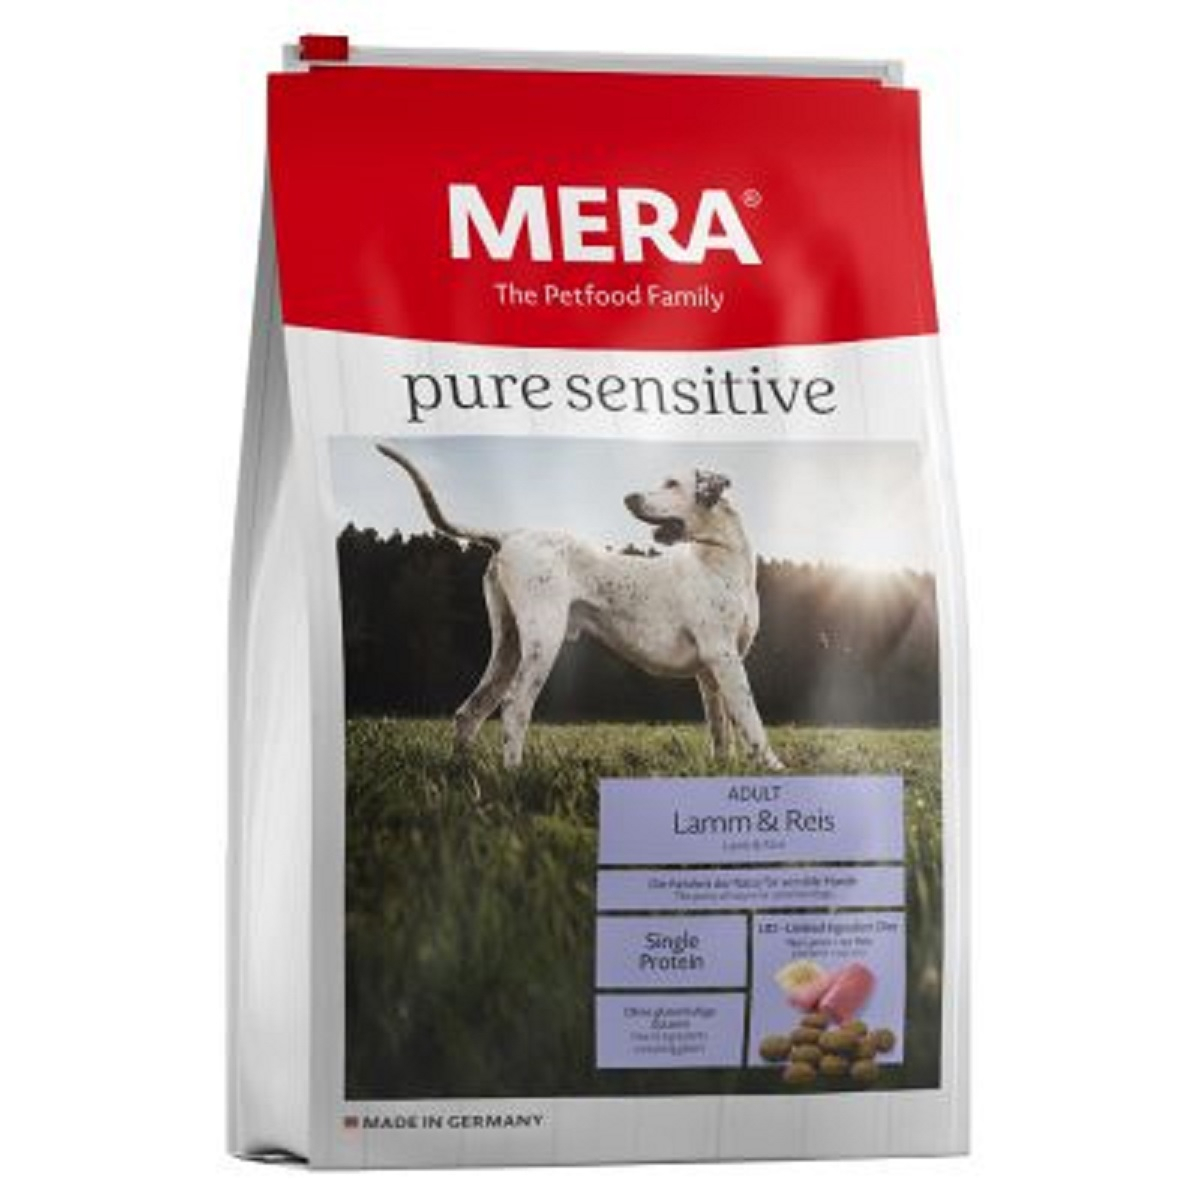 MERA Pure Sensitive Adult, met lam en rijst